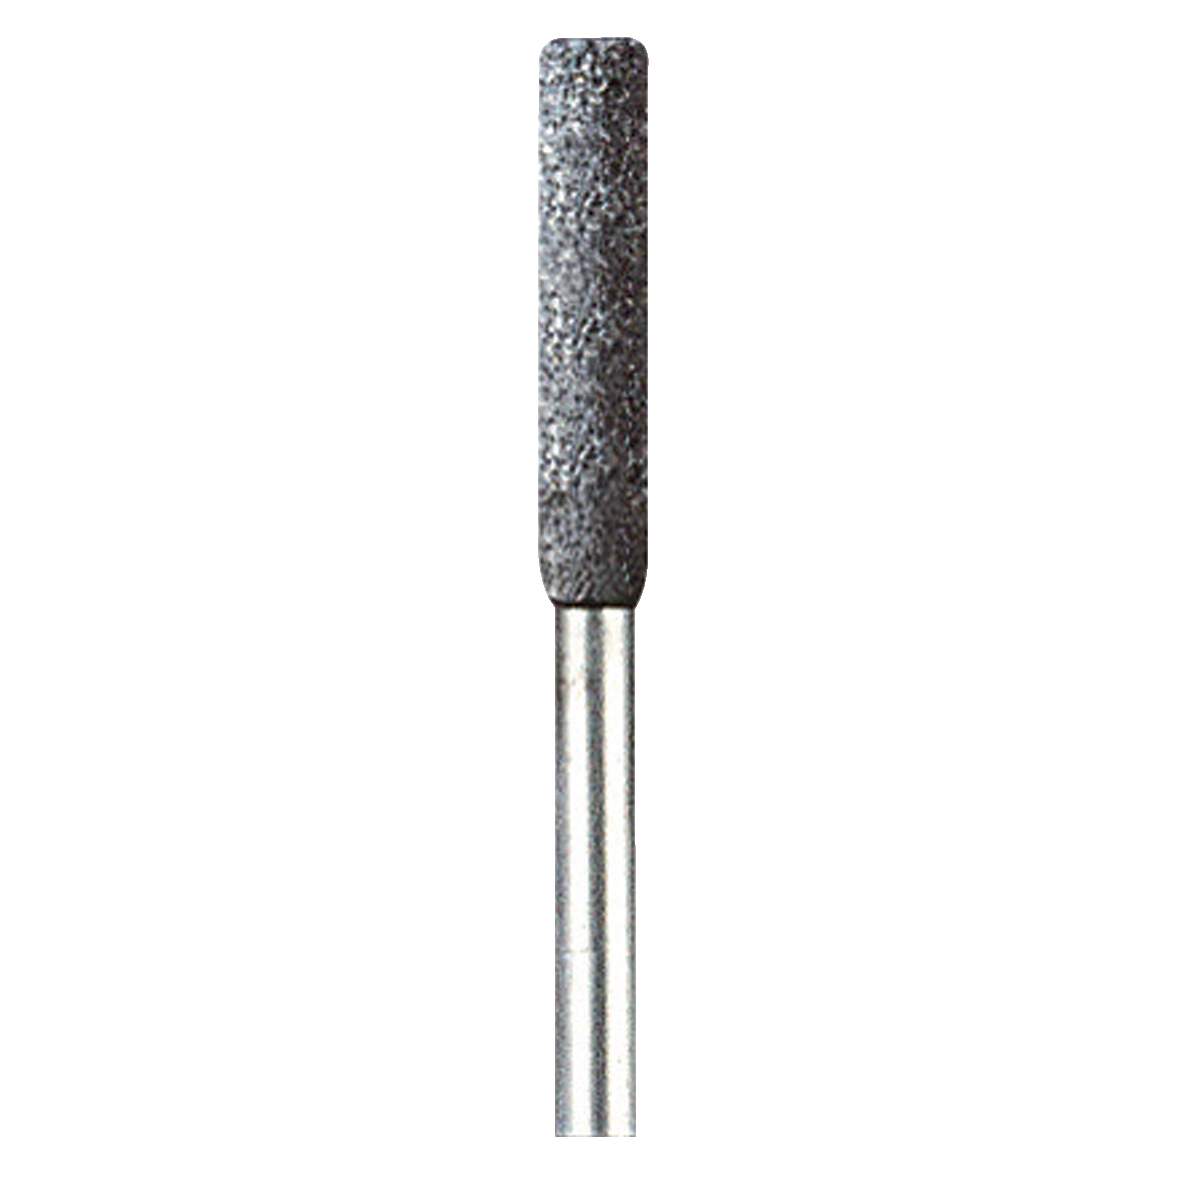 1203501 - Schleifstein f. Sägeketten DM 4,0mm (3 Stück)